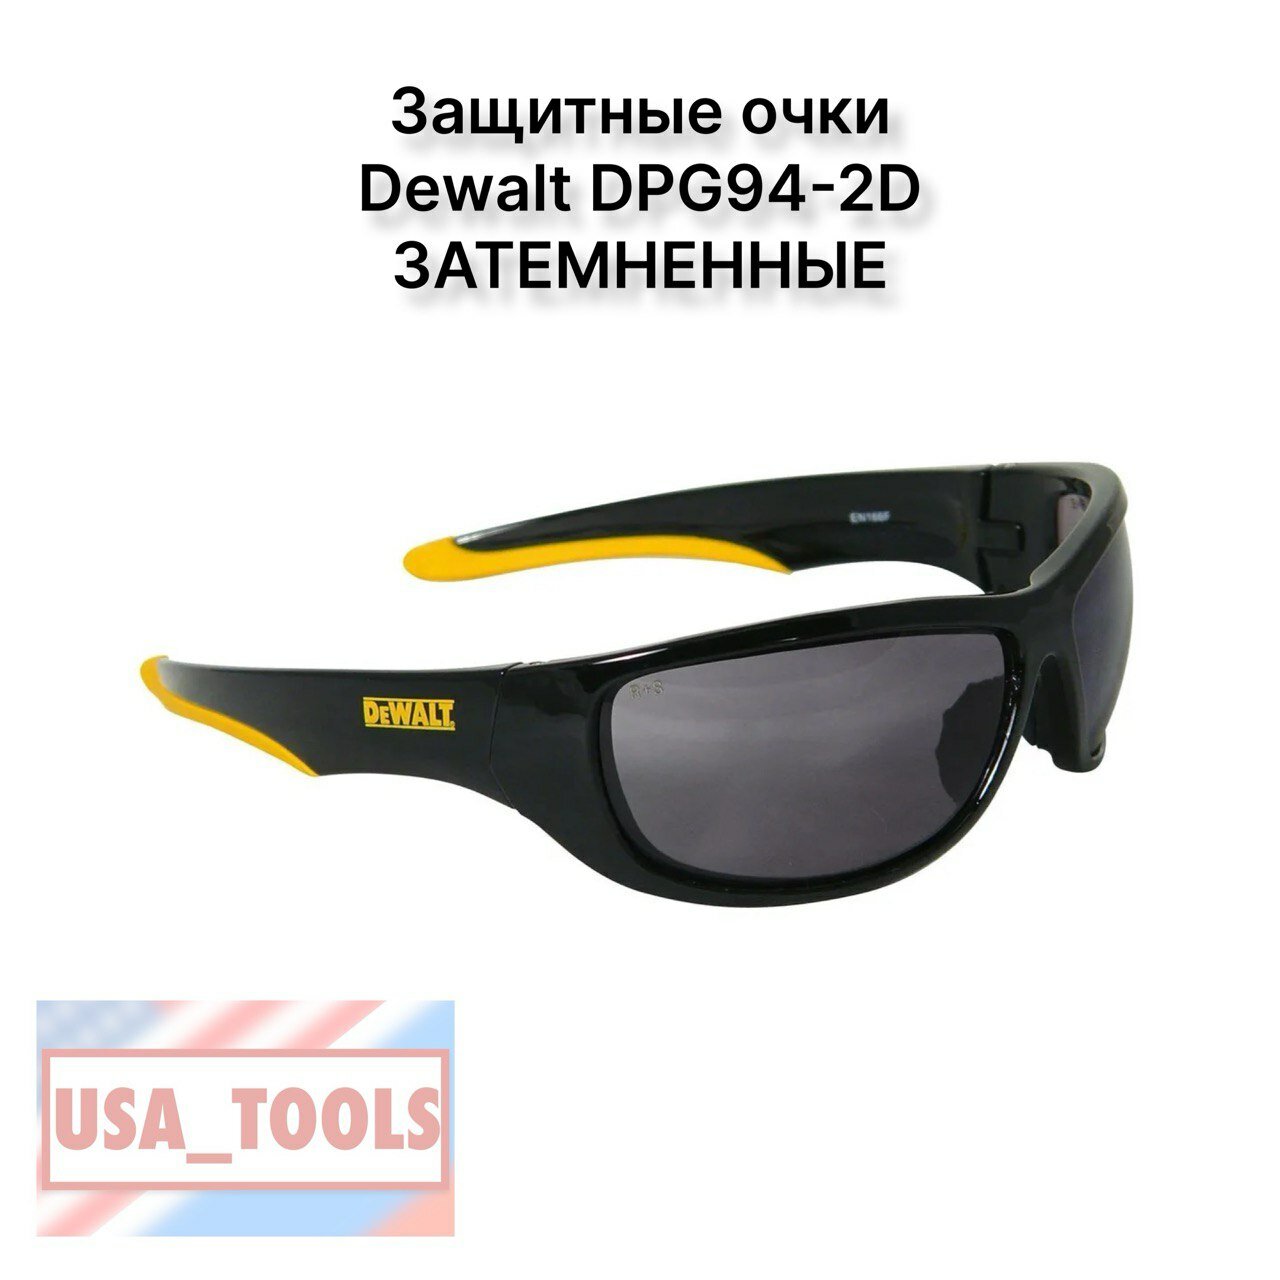 Защитные очки Dewalt DPG94-2D затемненные